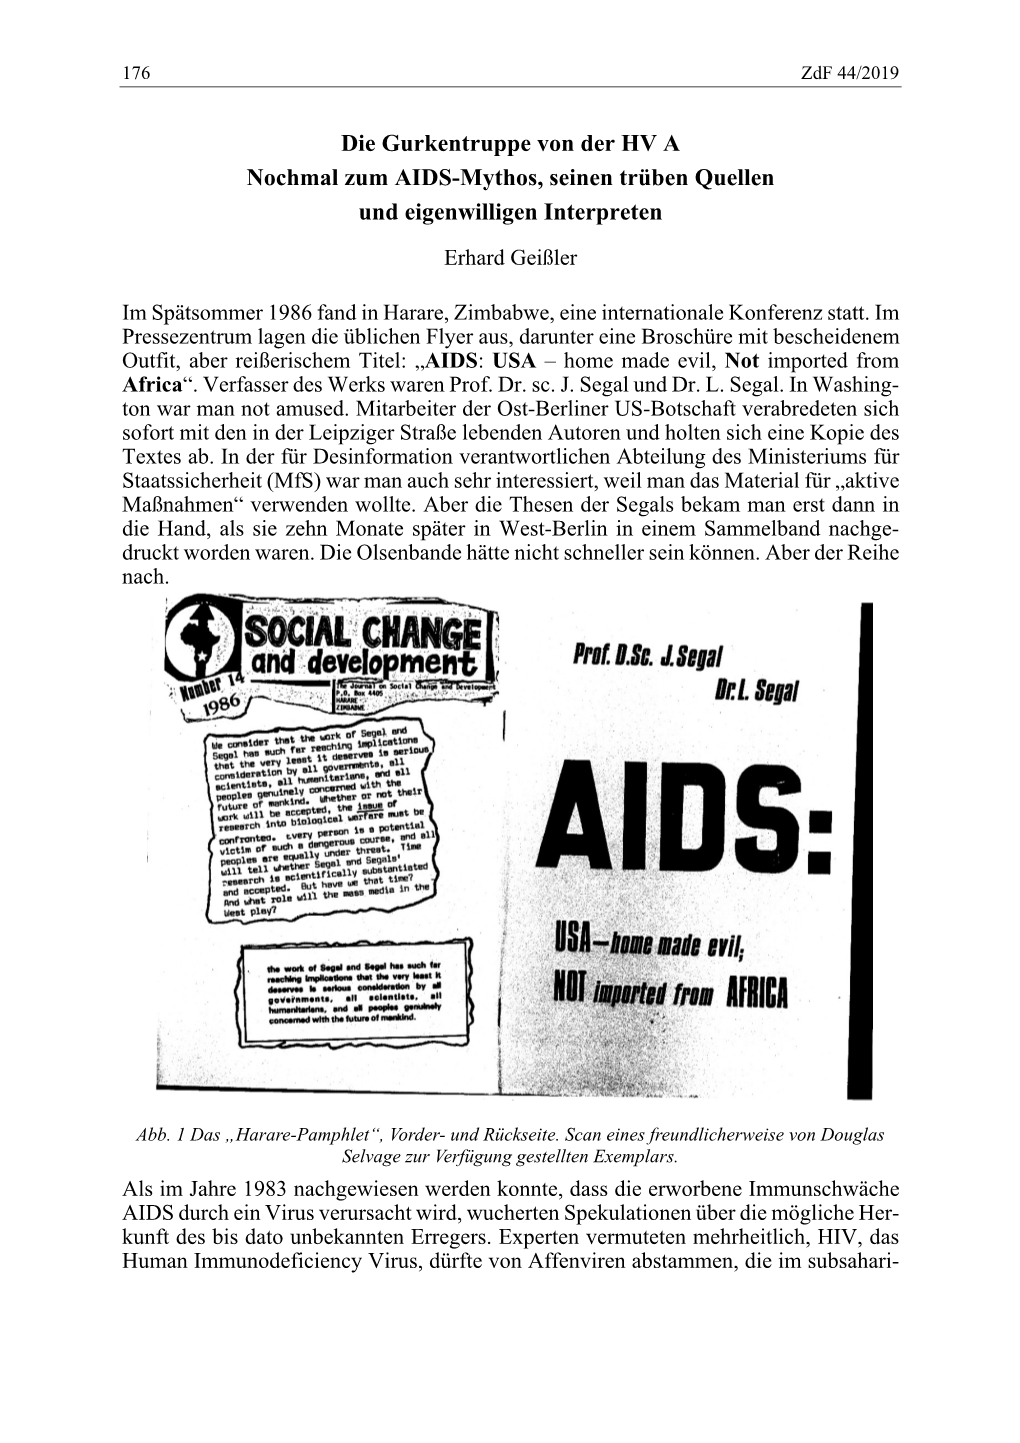 Die Gurkentruppe Von Der HV a Nochmal Zum AIDS-Mythos, Seinen Trüben Quellen Und Eigenwilligen Interpreten